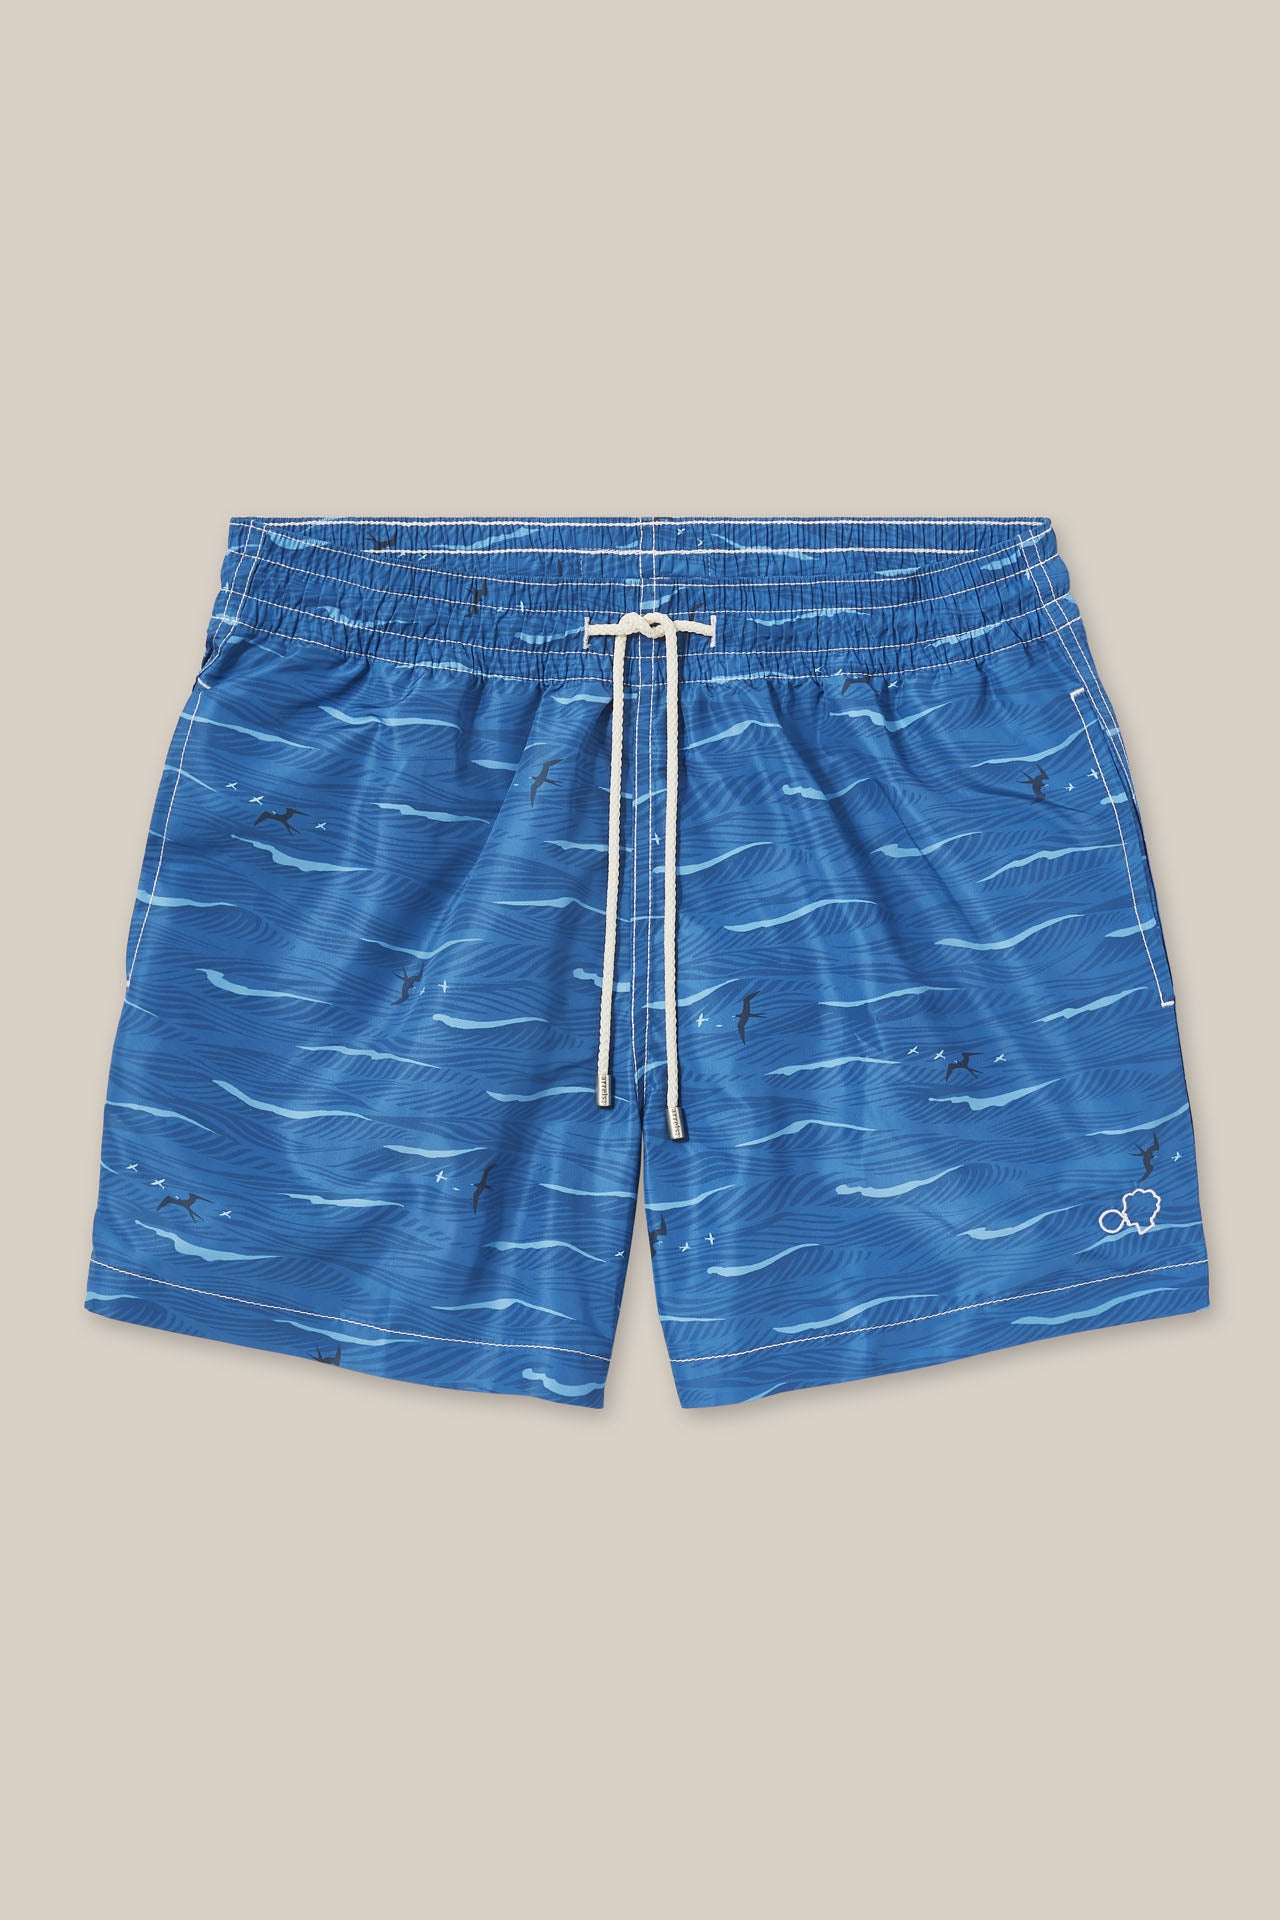 Swim Shorts Blue Flying Fish